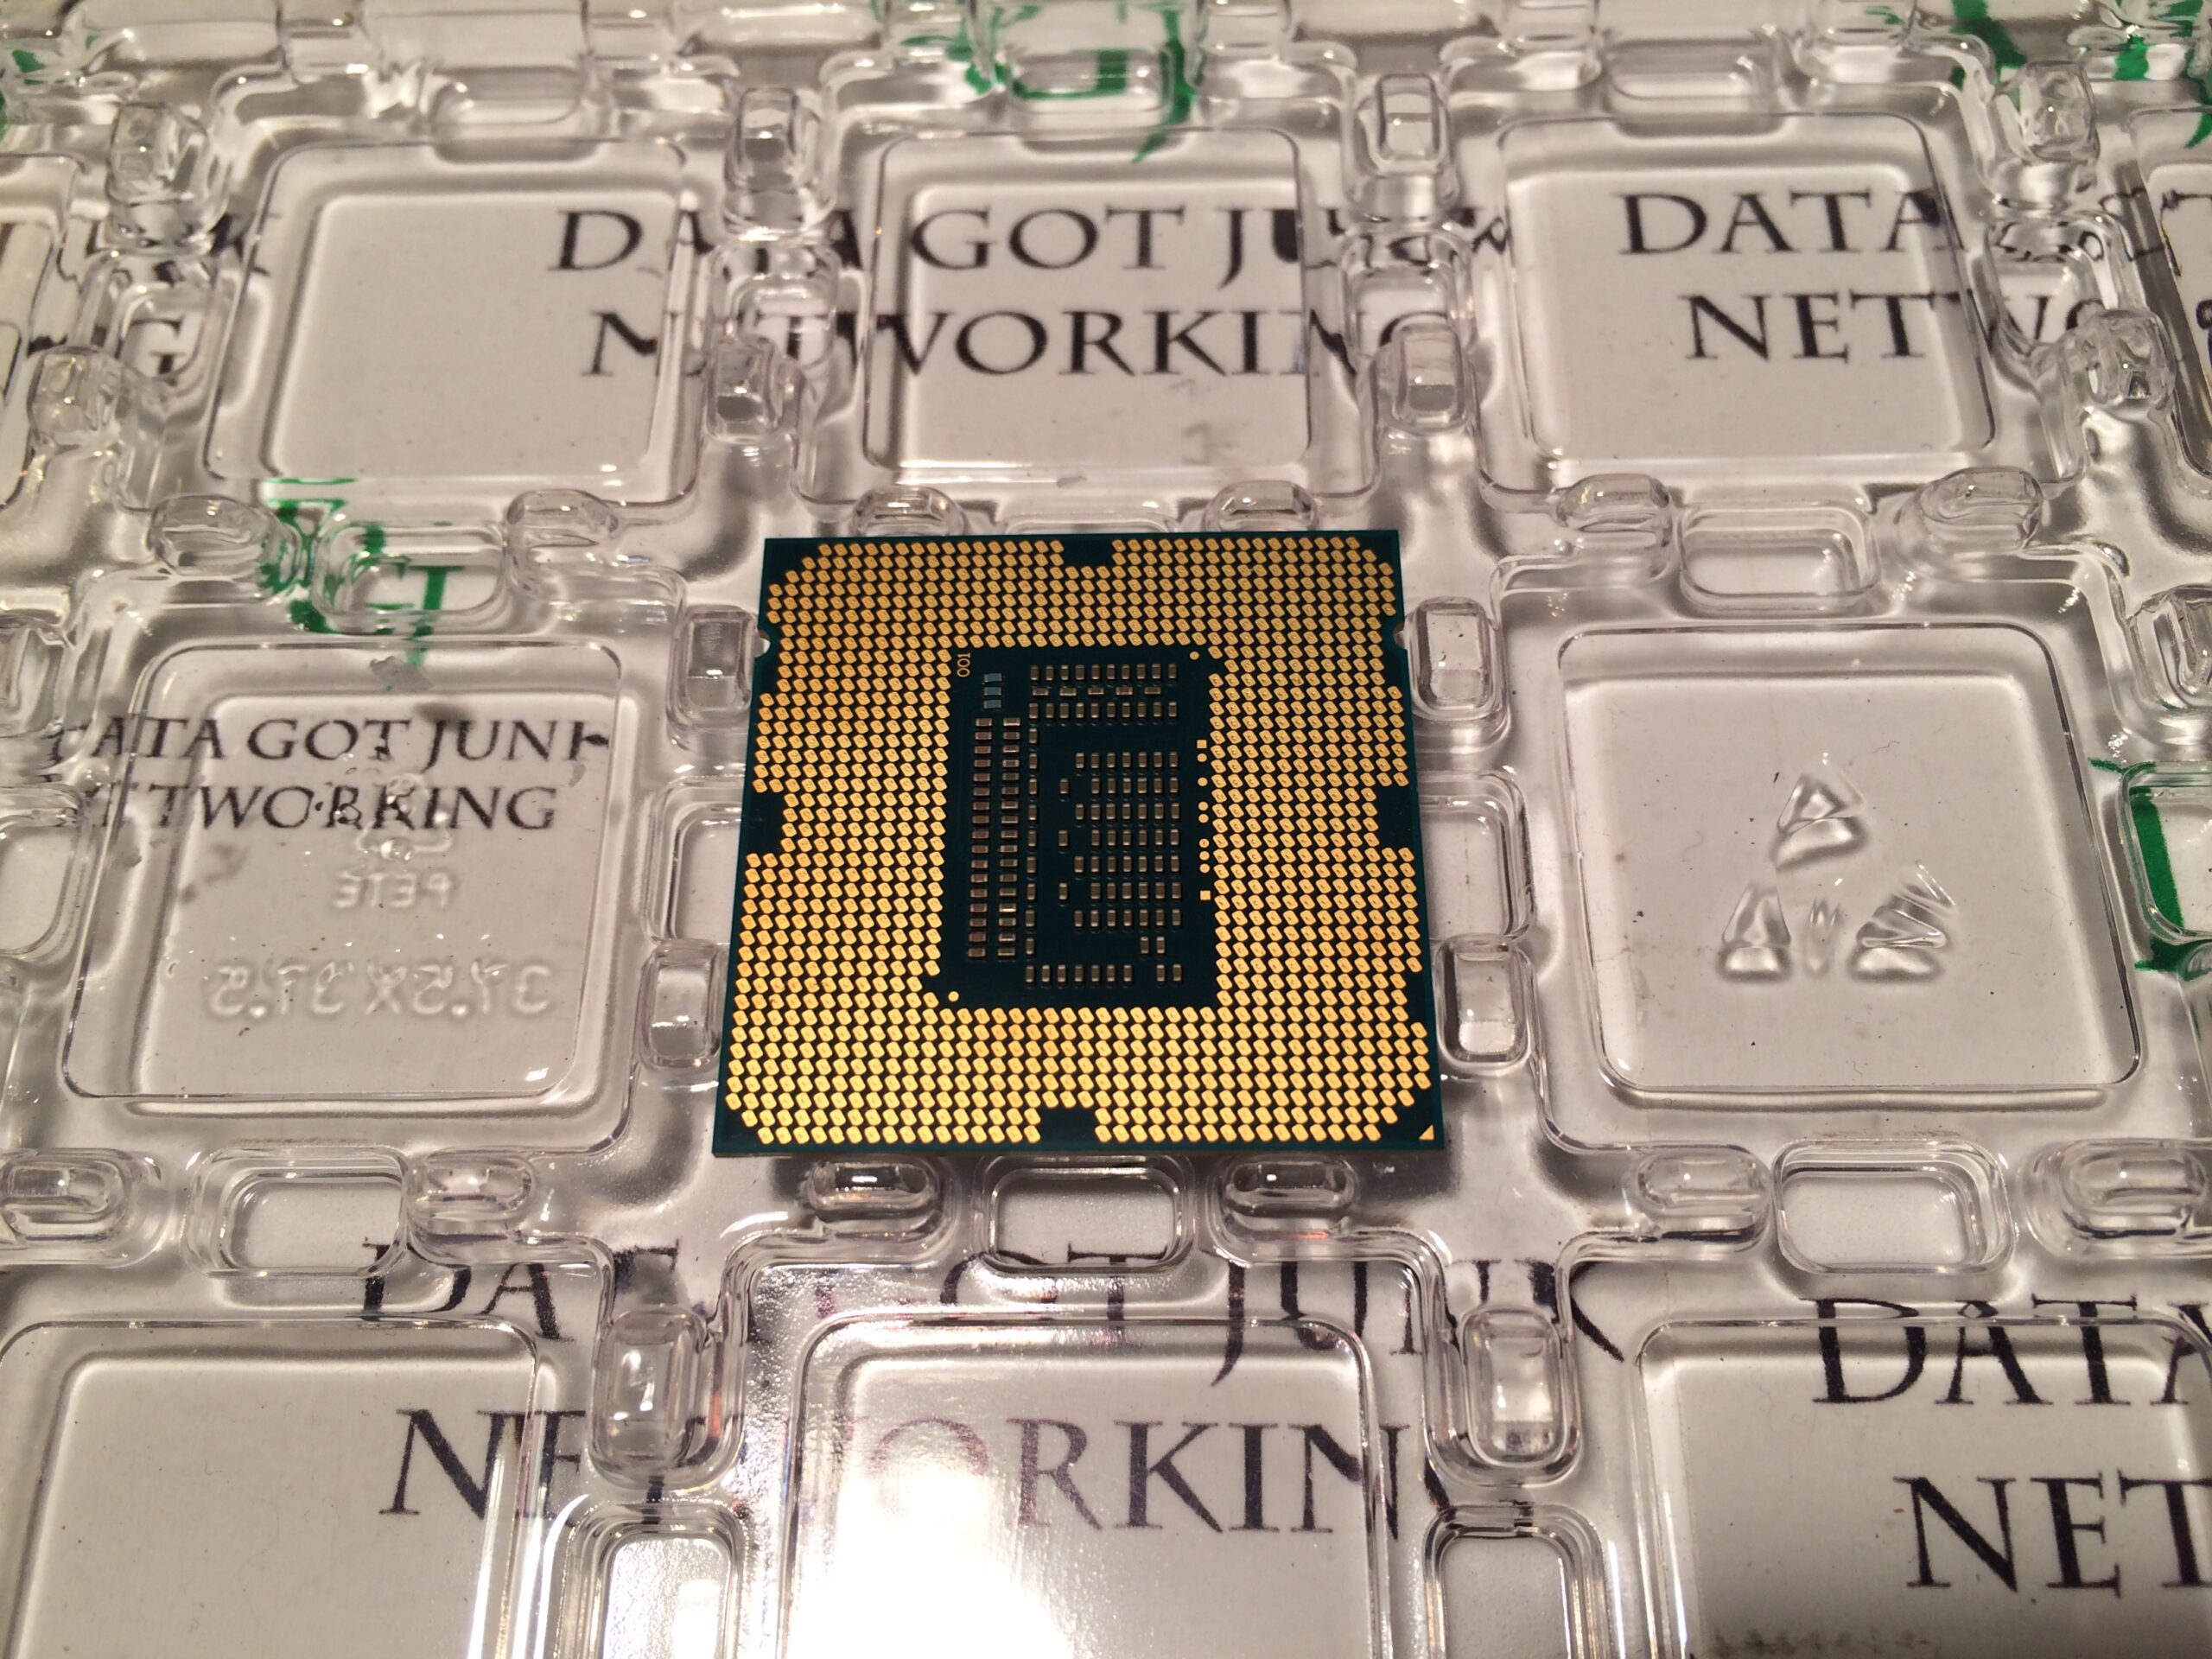 Интел i3 в соките. Intel Core i9 9880h 2.30 GHZ. I5 3550. Похожий процессор на i3-115g4.